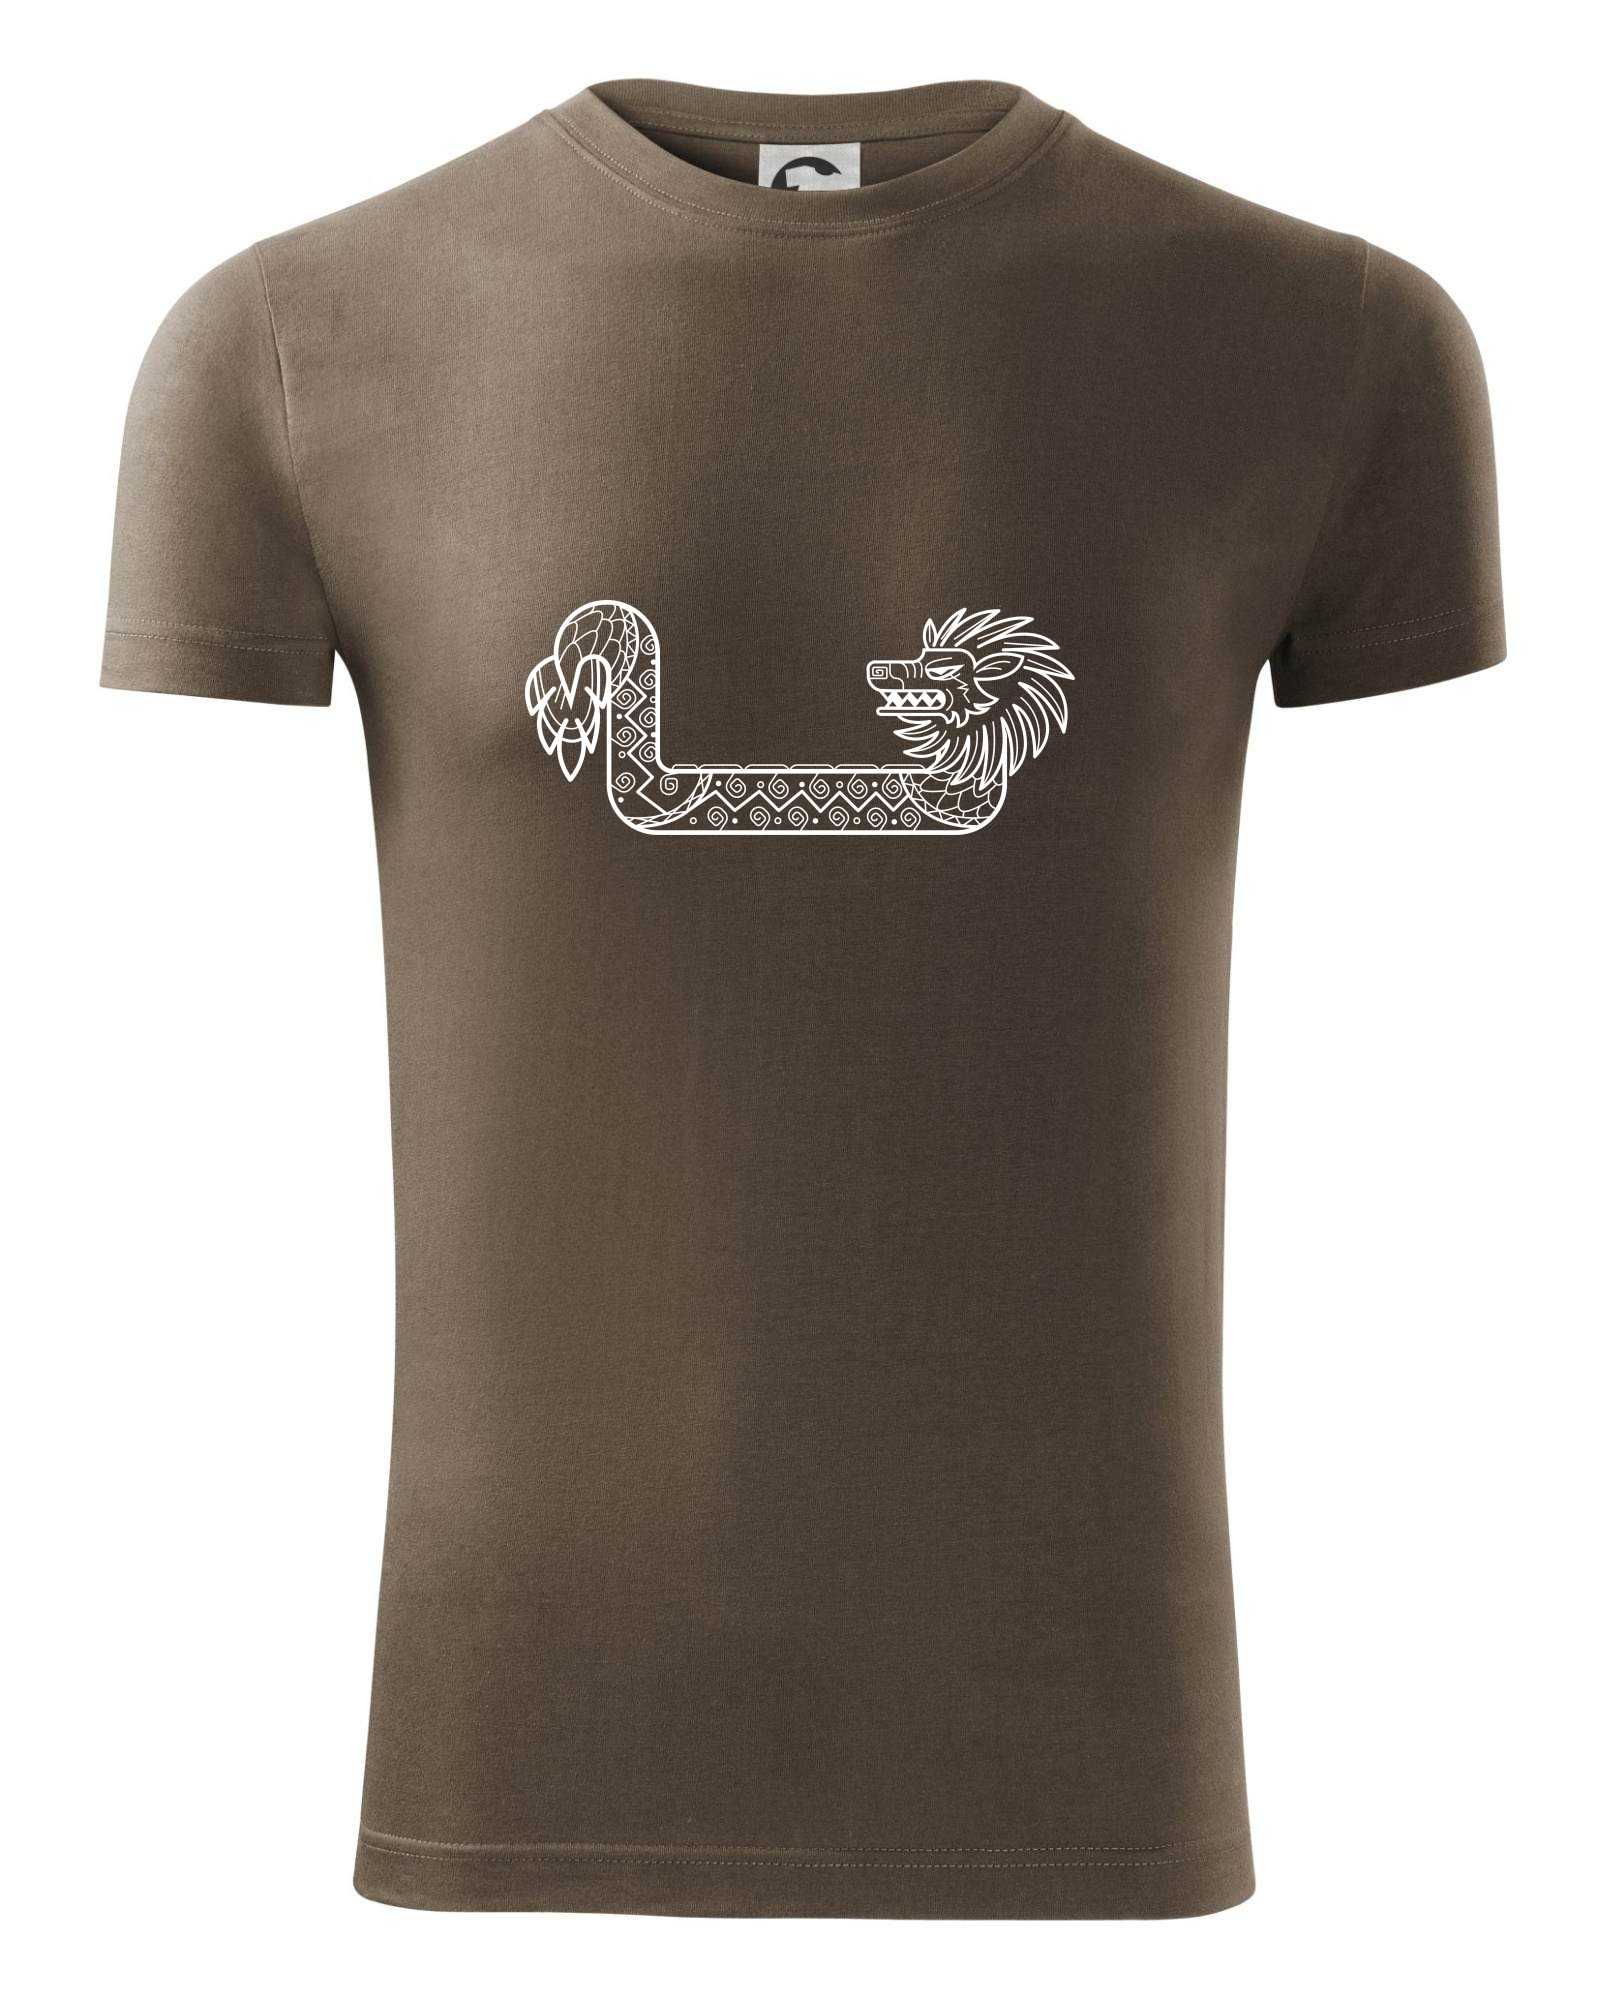 Mayové - zvířata drak - Viper FIT pánské triko